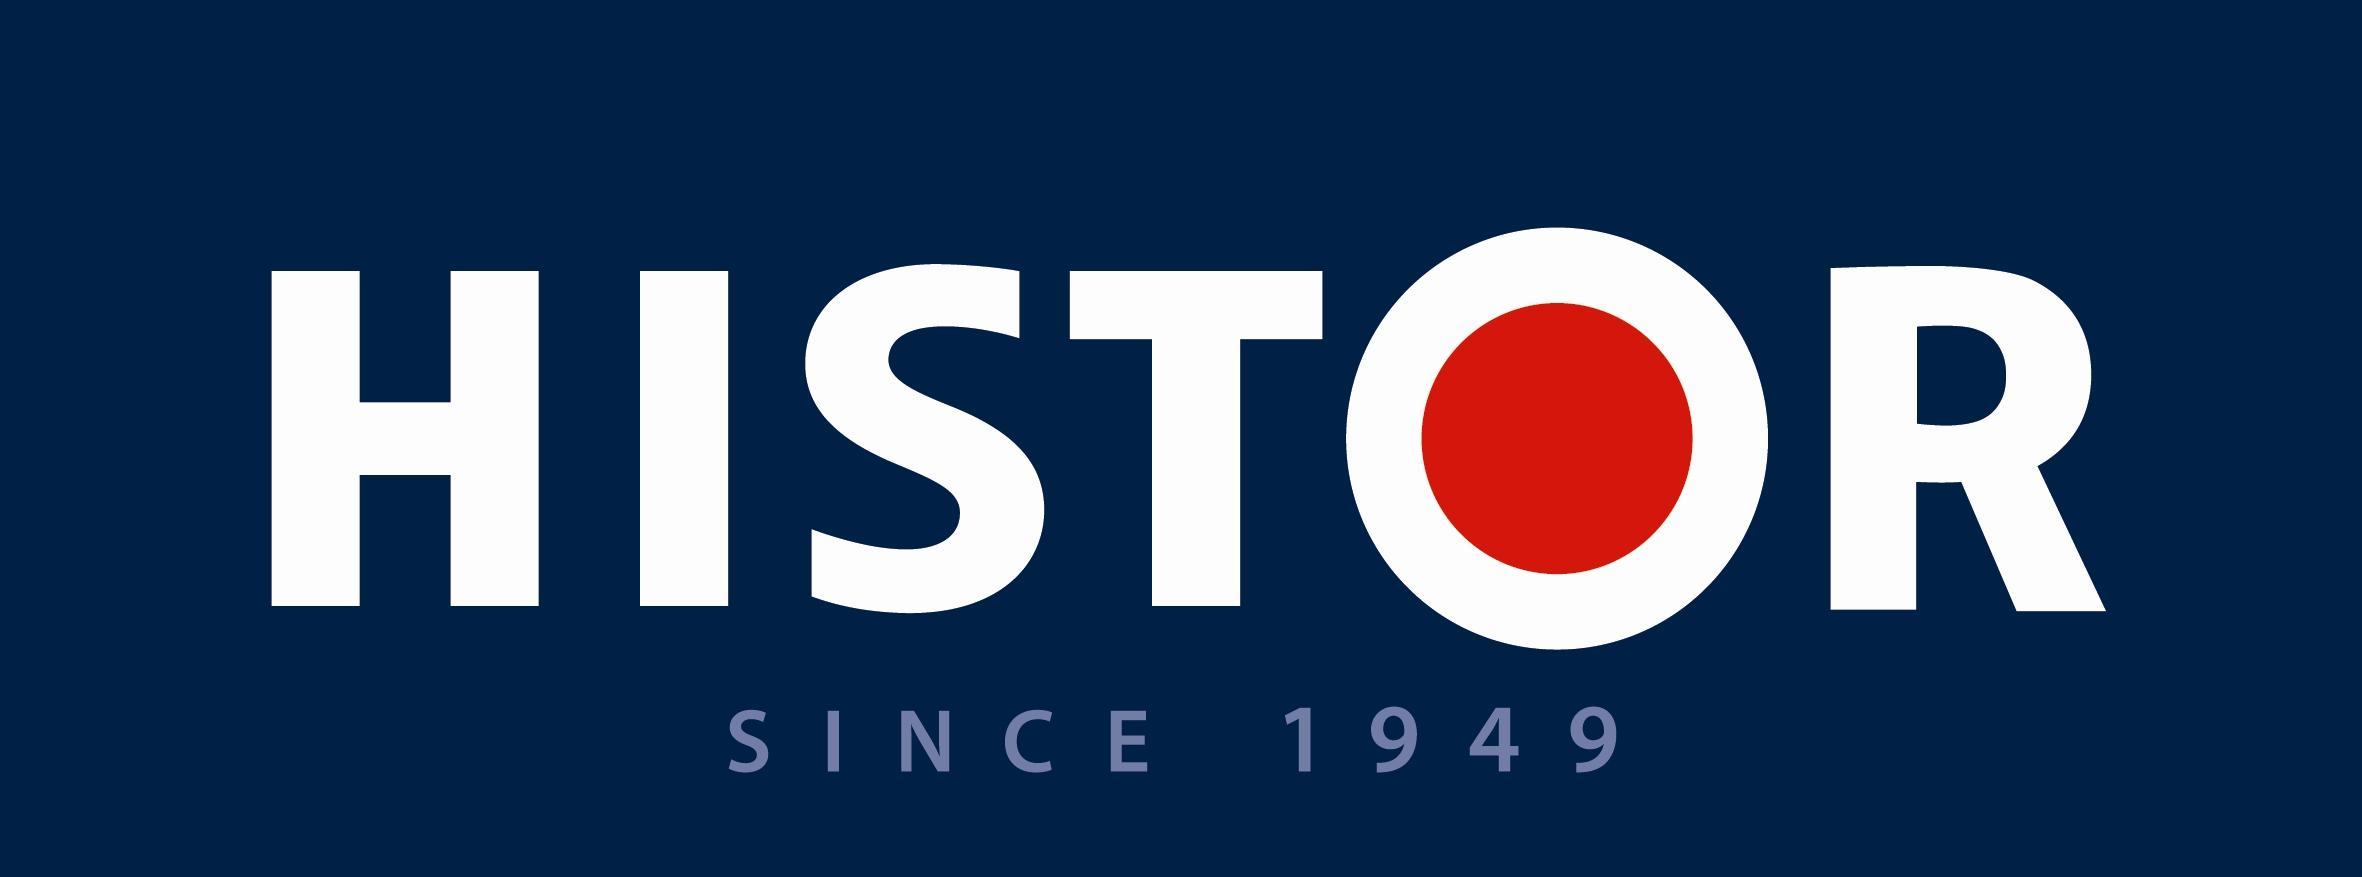 Histor_logo_2009_FC.jpg